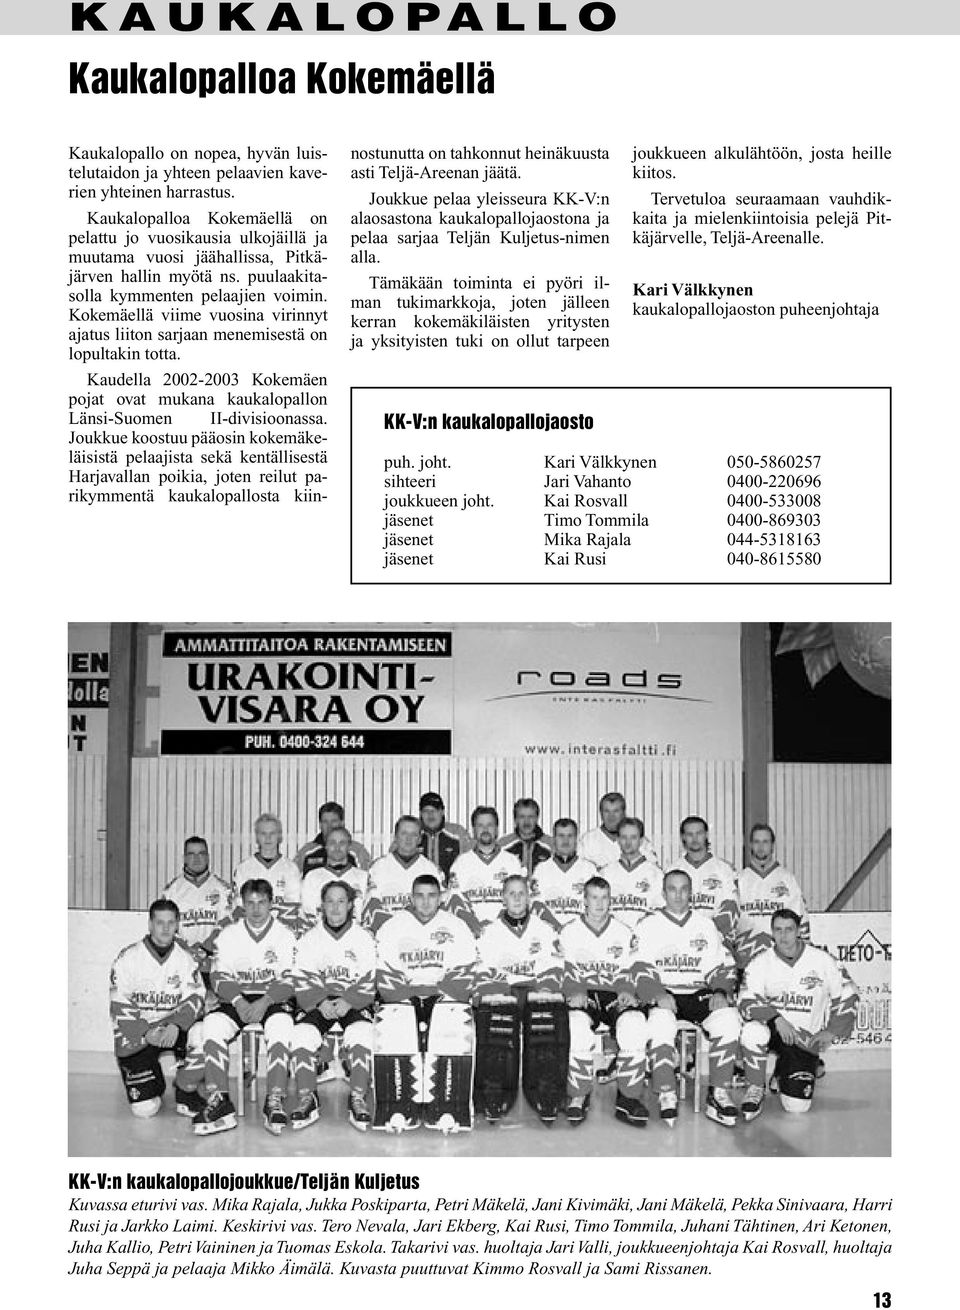 Kokemäellä viime vuosina virinnyt ajatus liiton sarjaan menemisestä on lopultakin totta. Kaudella 2002-2003 Kokemäen pojat ovat mukana kaukalopallon Länsi-Suomen II-divisioonassa.